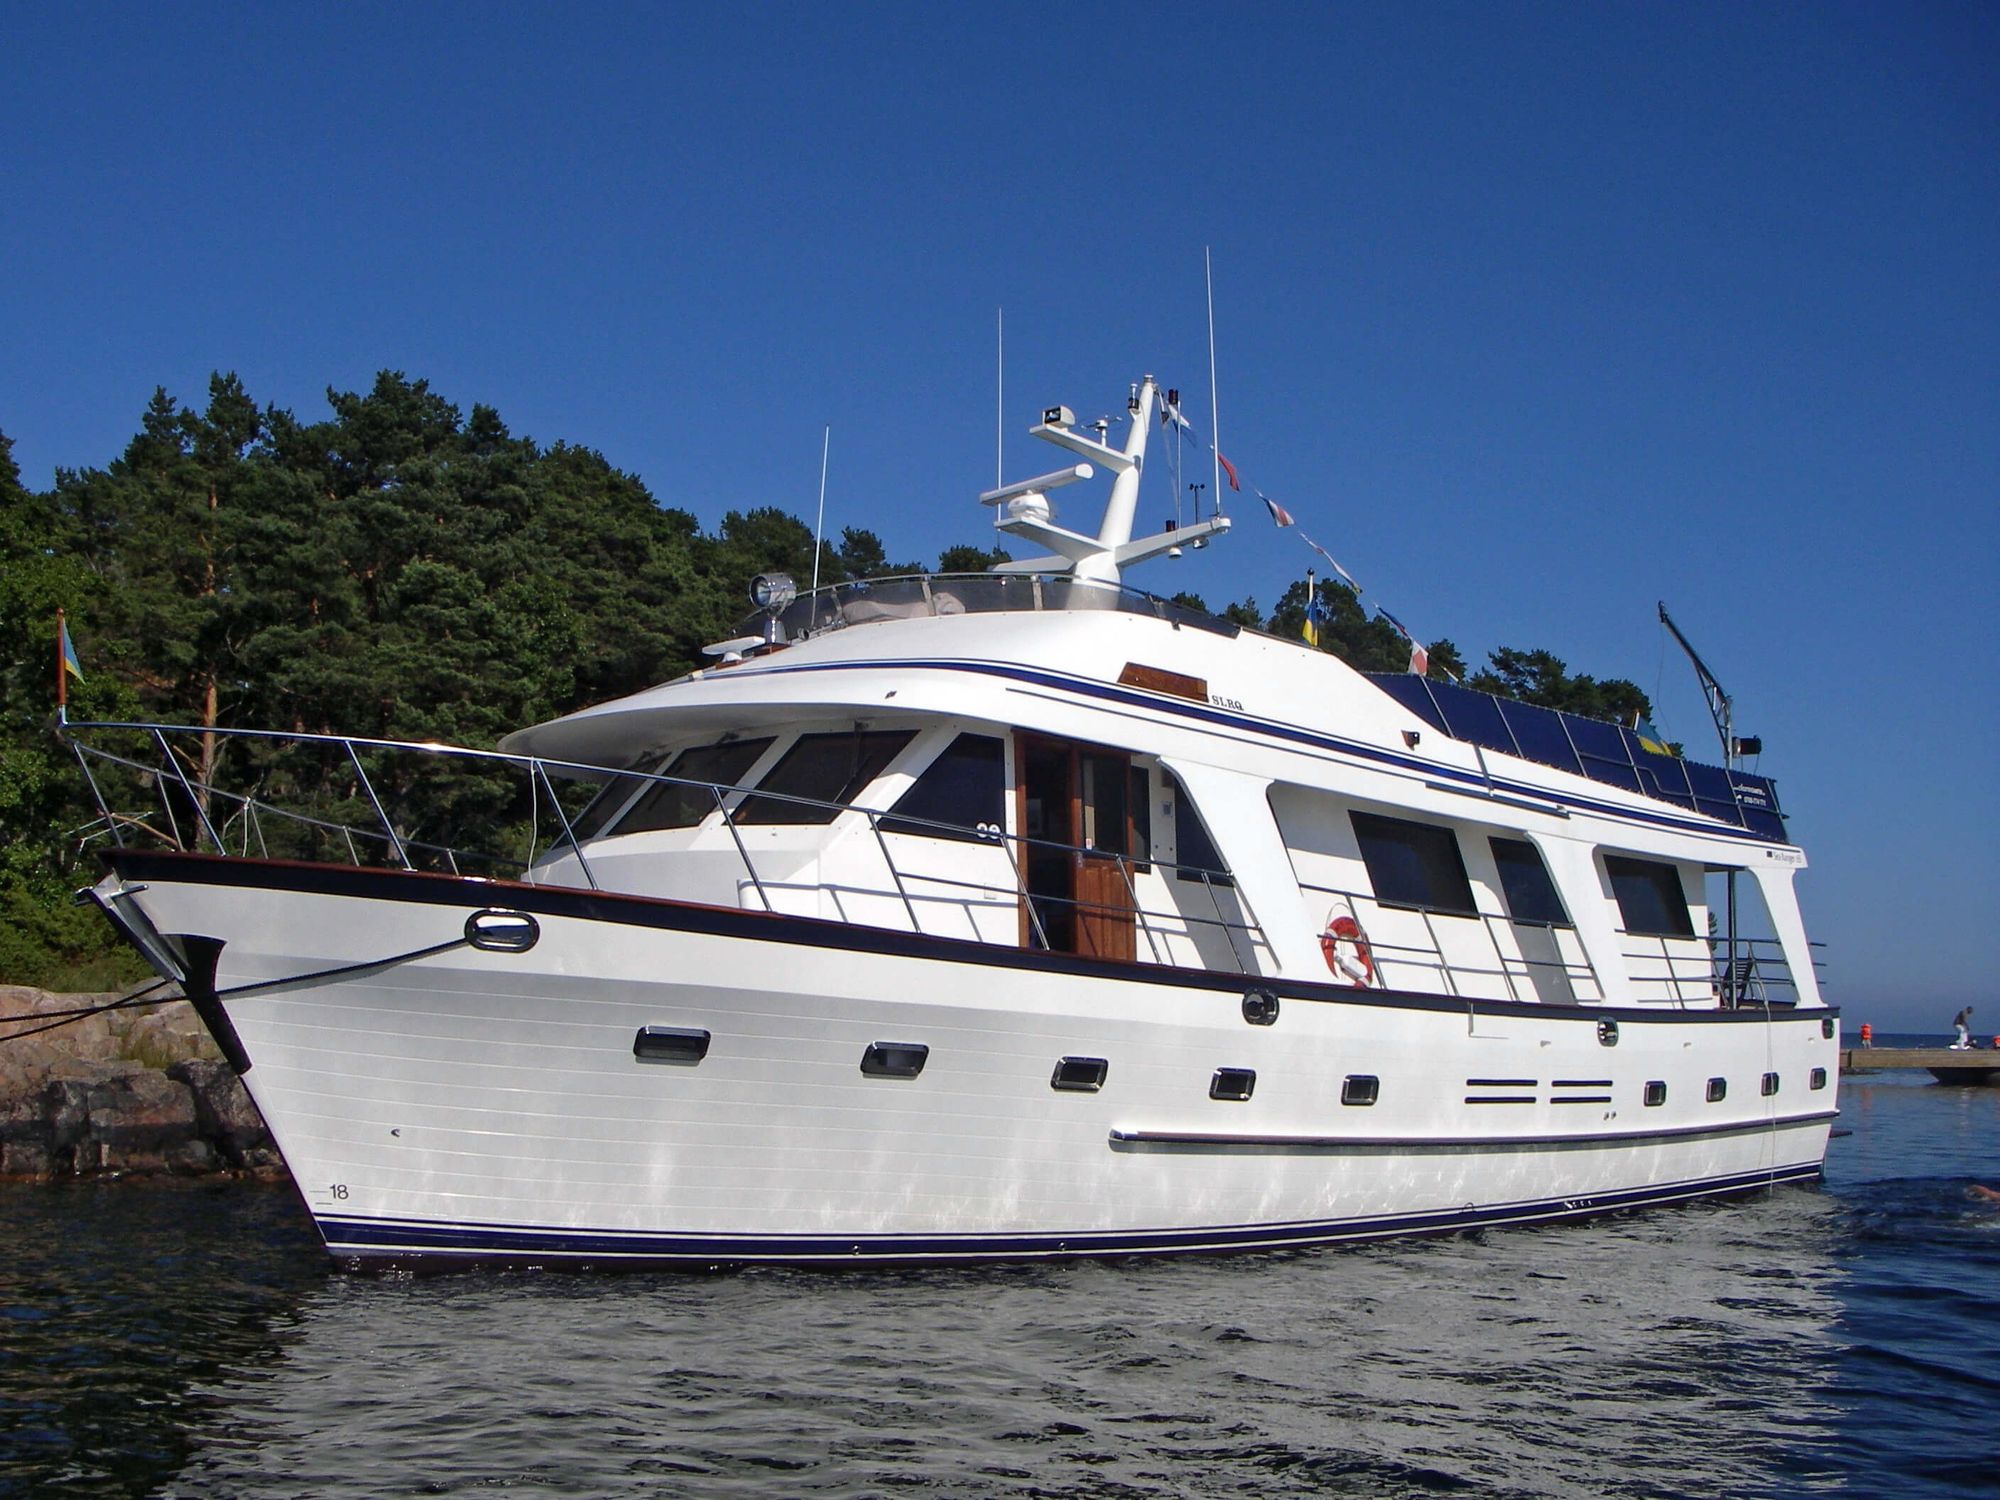 M/Y Charm är en exklusiv charterbåt med hemmahamn mitt på Strandvägen i Stockholm